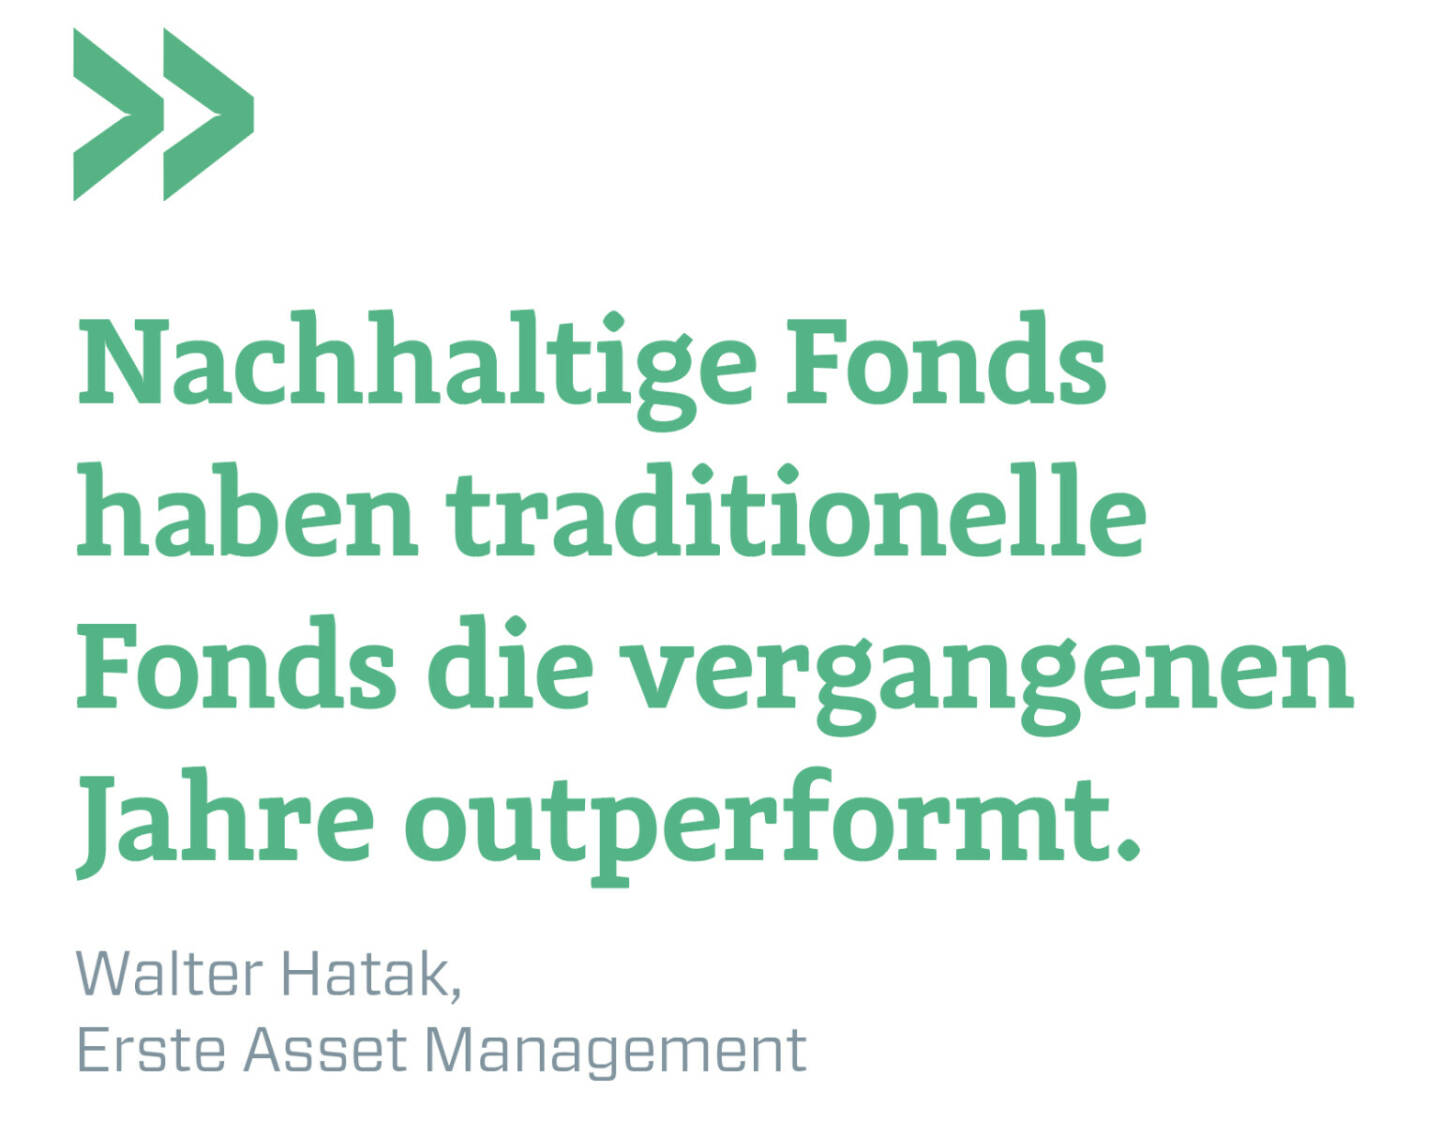 Nachhaltige Fonds haben traditionelle Fonds die vergangenen Jahre outperformt.
Walter Hatak, Erste Asset Management